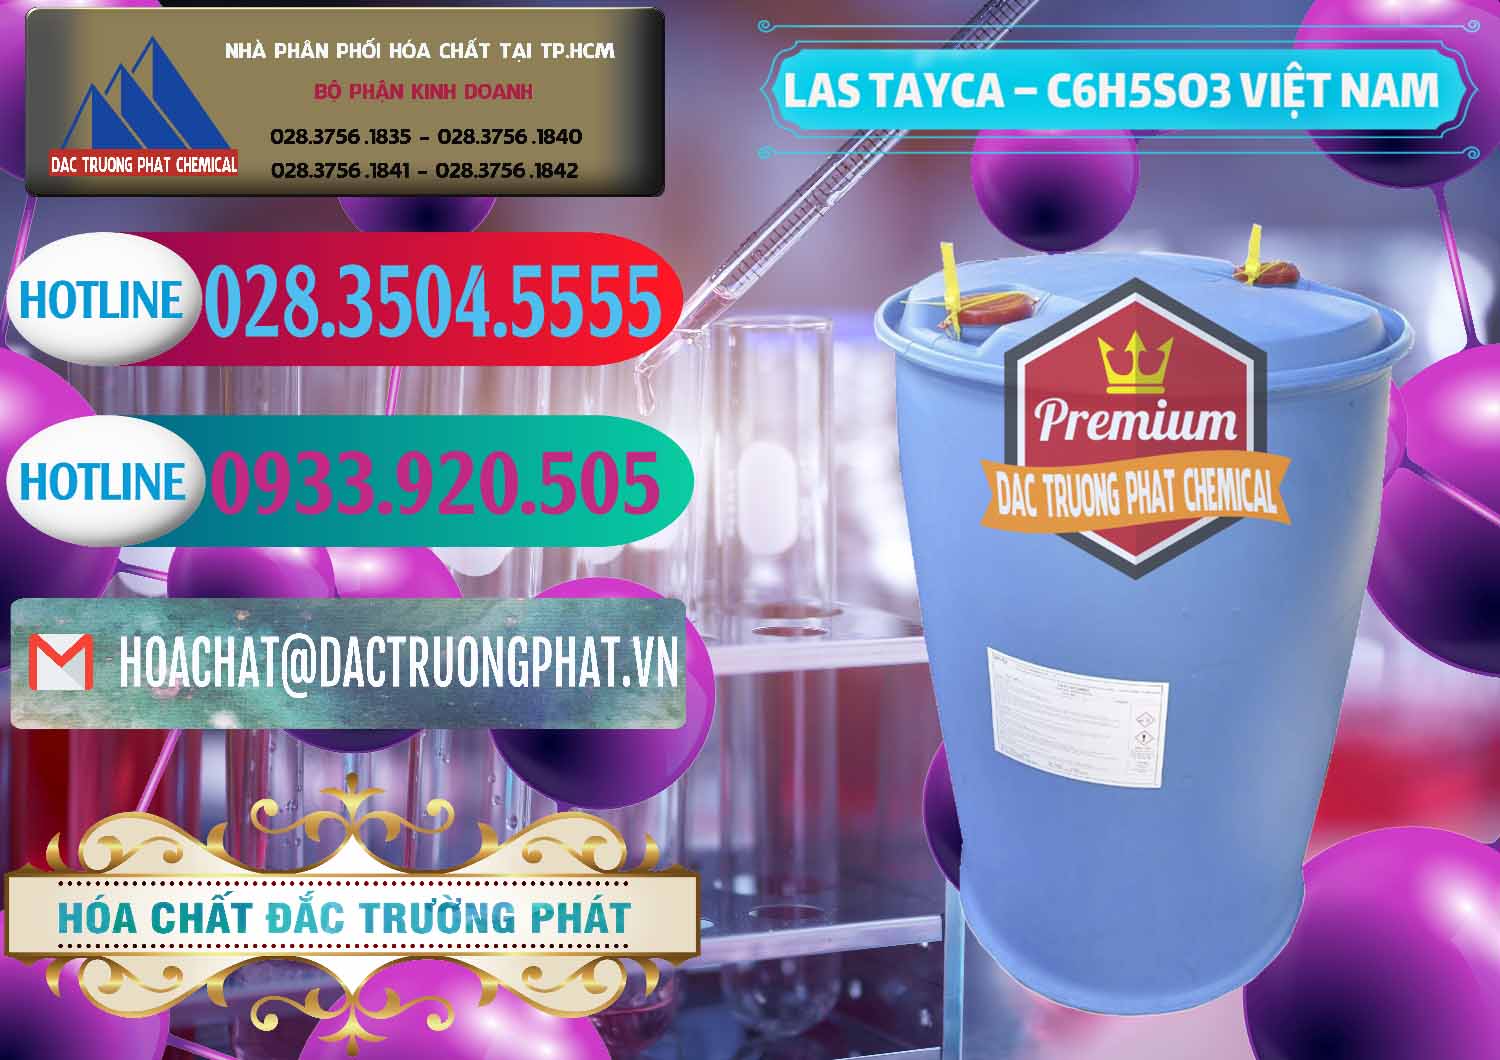 Cty bán & phân phối Chất tạo bọt Las Tayca Việt Nam - 0305 - Chuyên cung ứng _ phân phối hóa chất tại TP.HCM - truongphat.vn